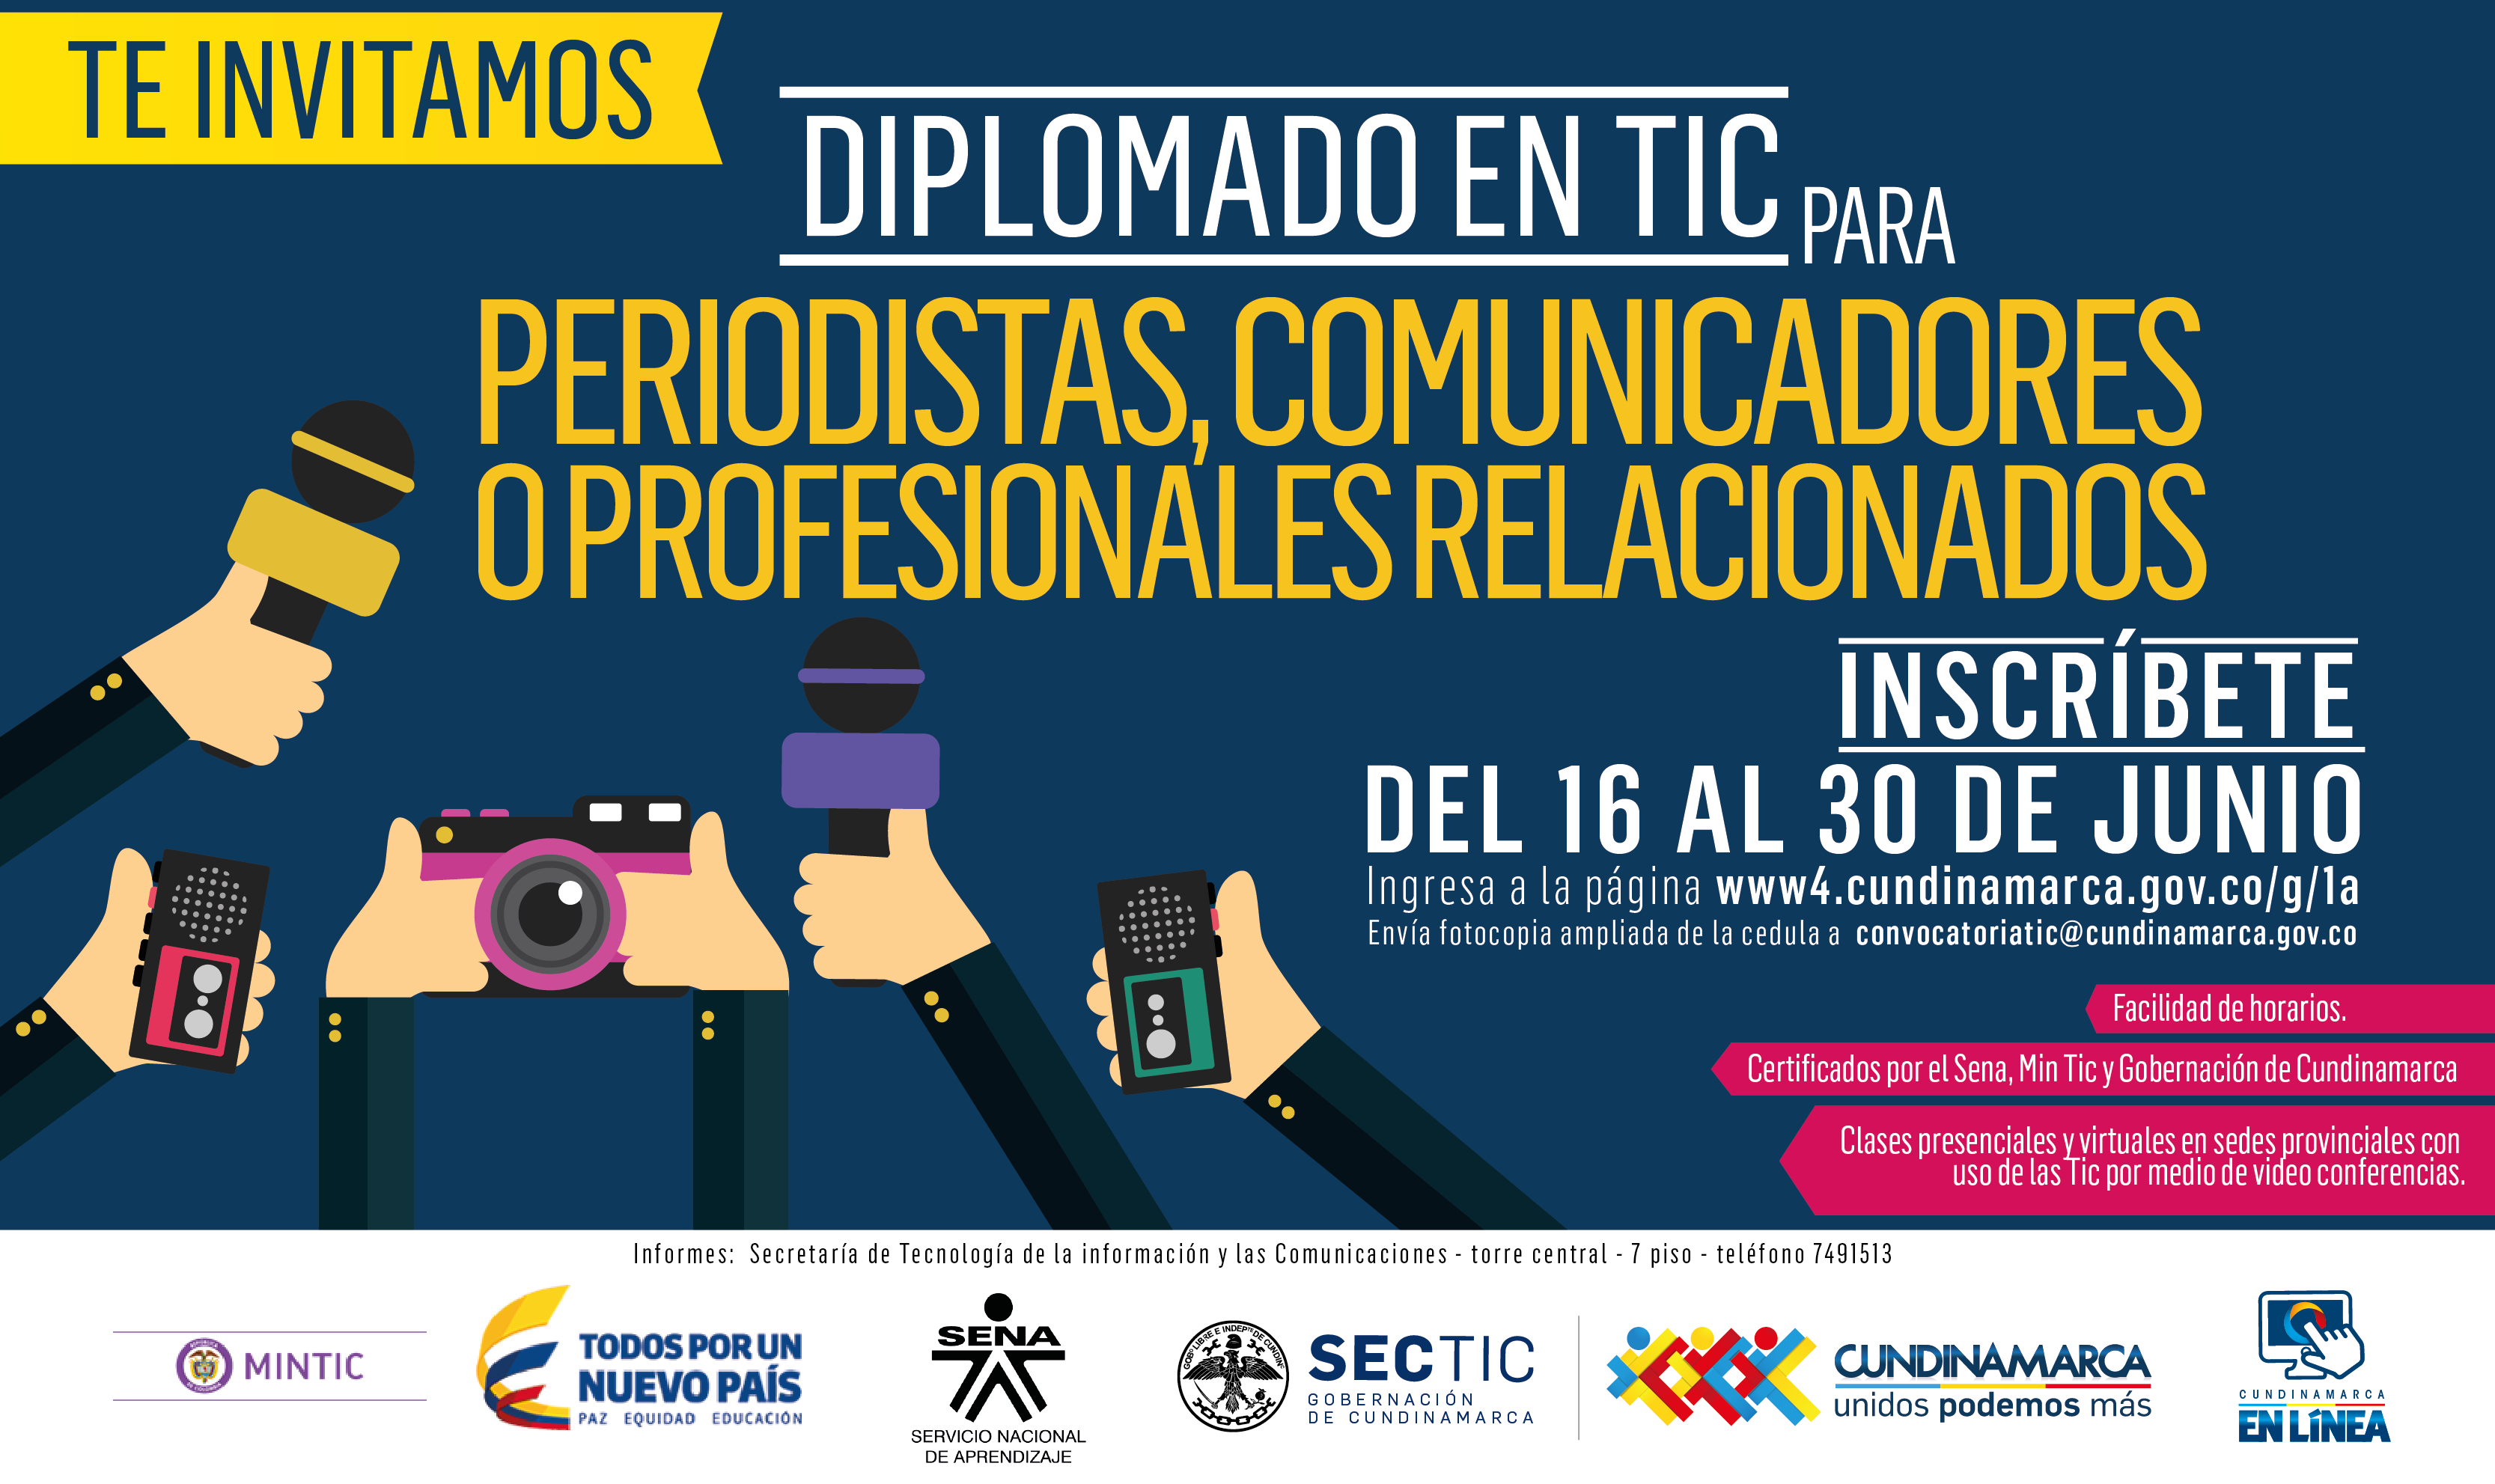 TIC para periodistas, el diplomado que ofrece la Gobernación de Cundinamarca


